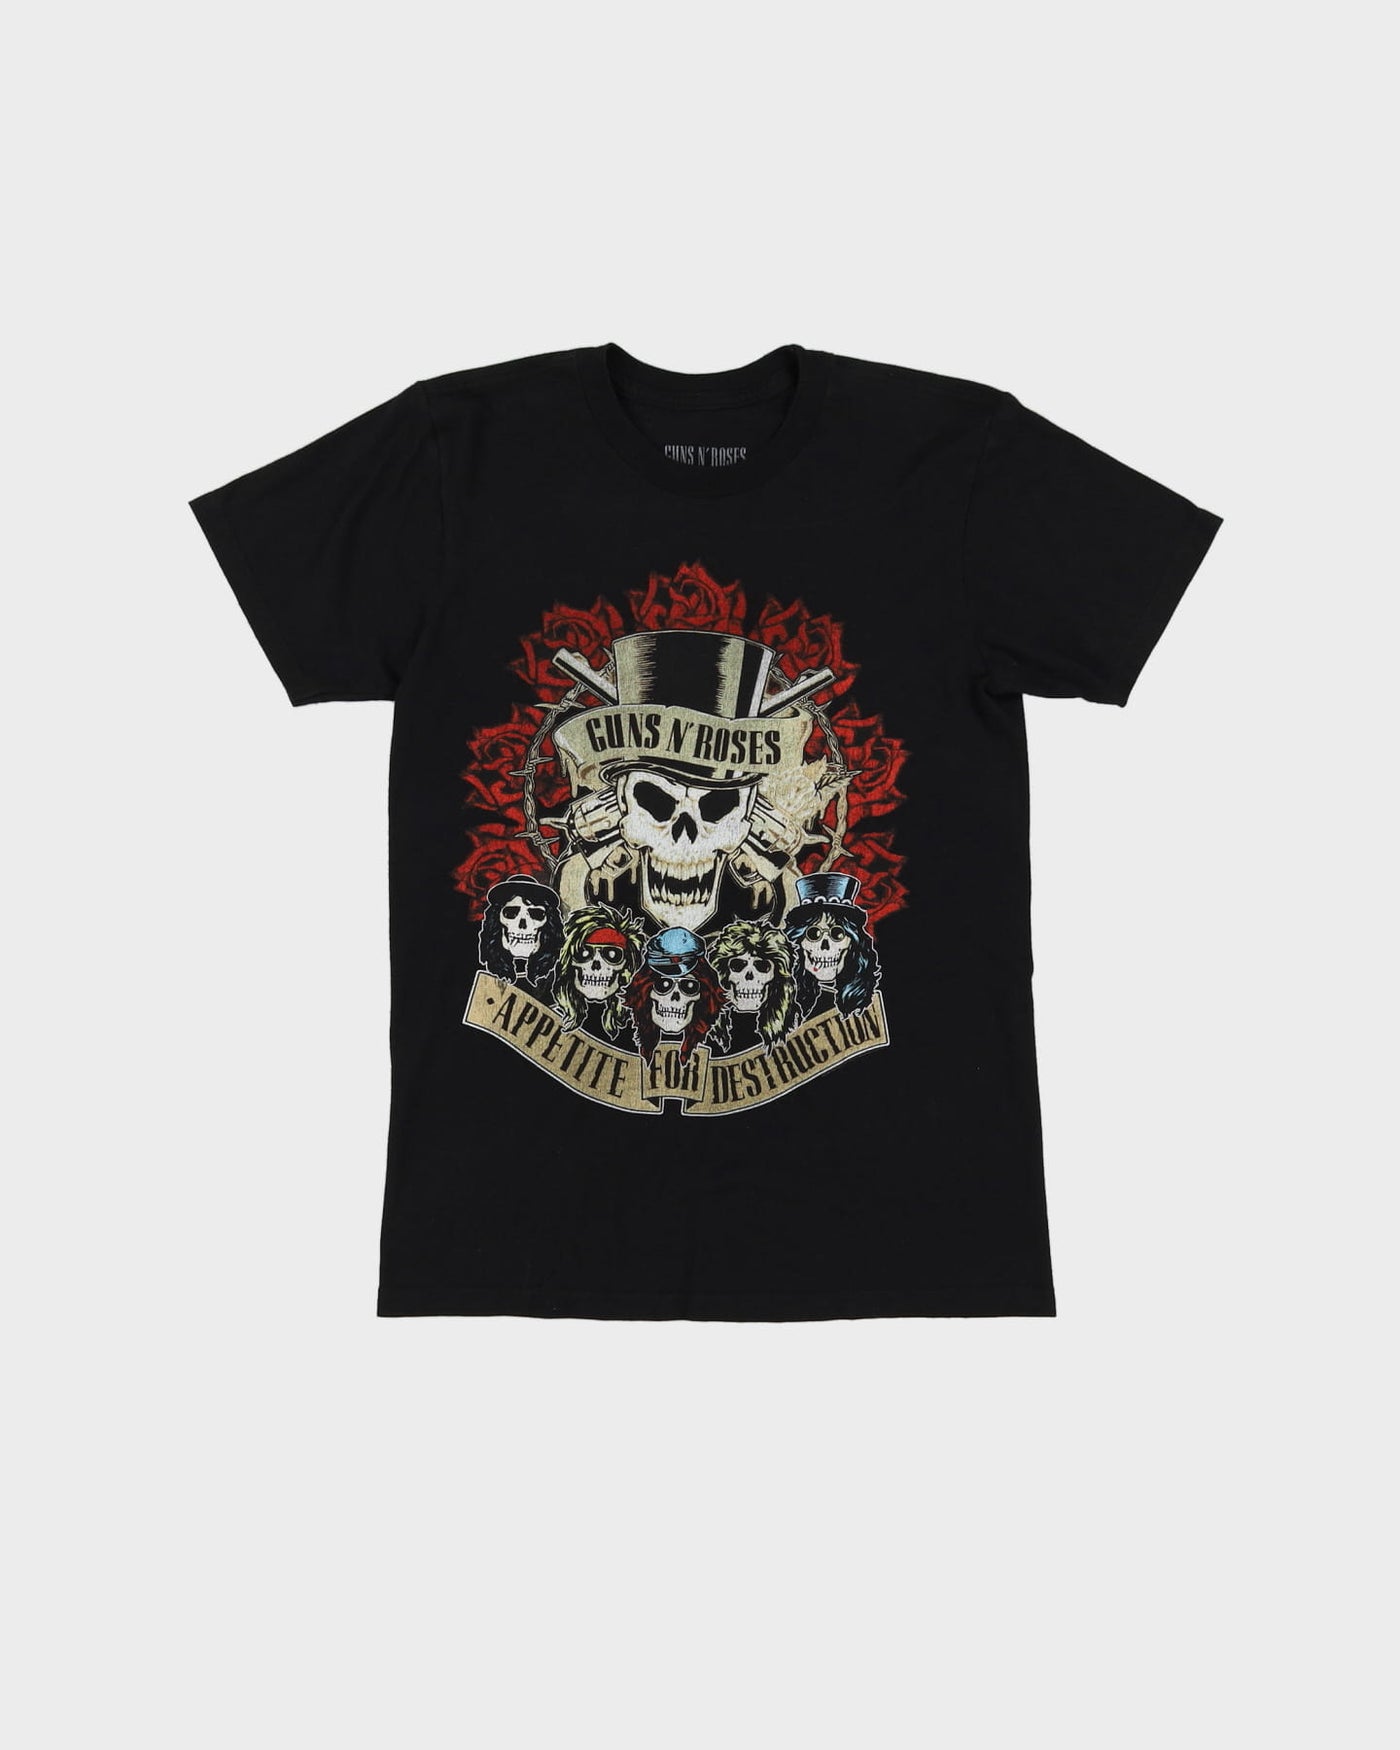 Guns'N'Roses Appetite For Destruction Black T-Shirt - S